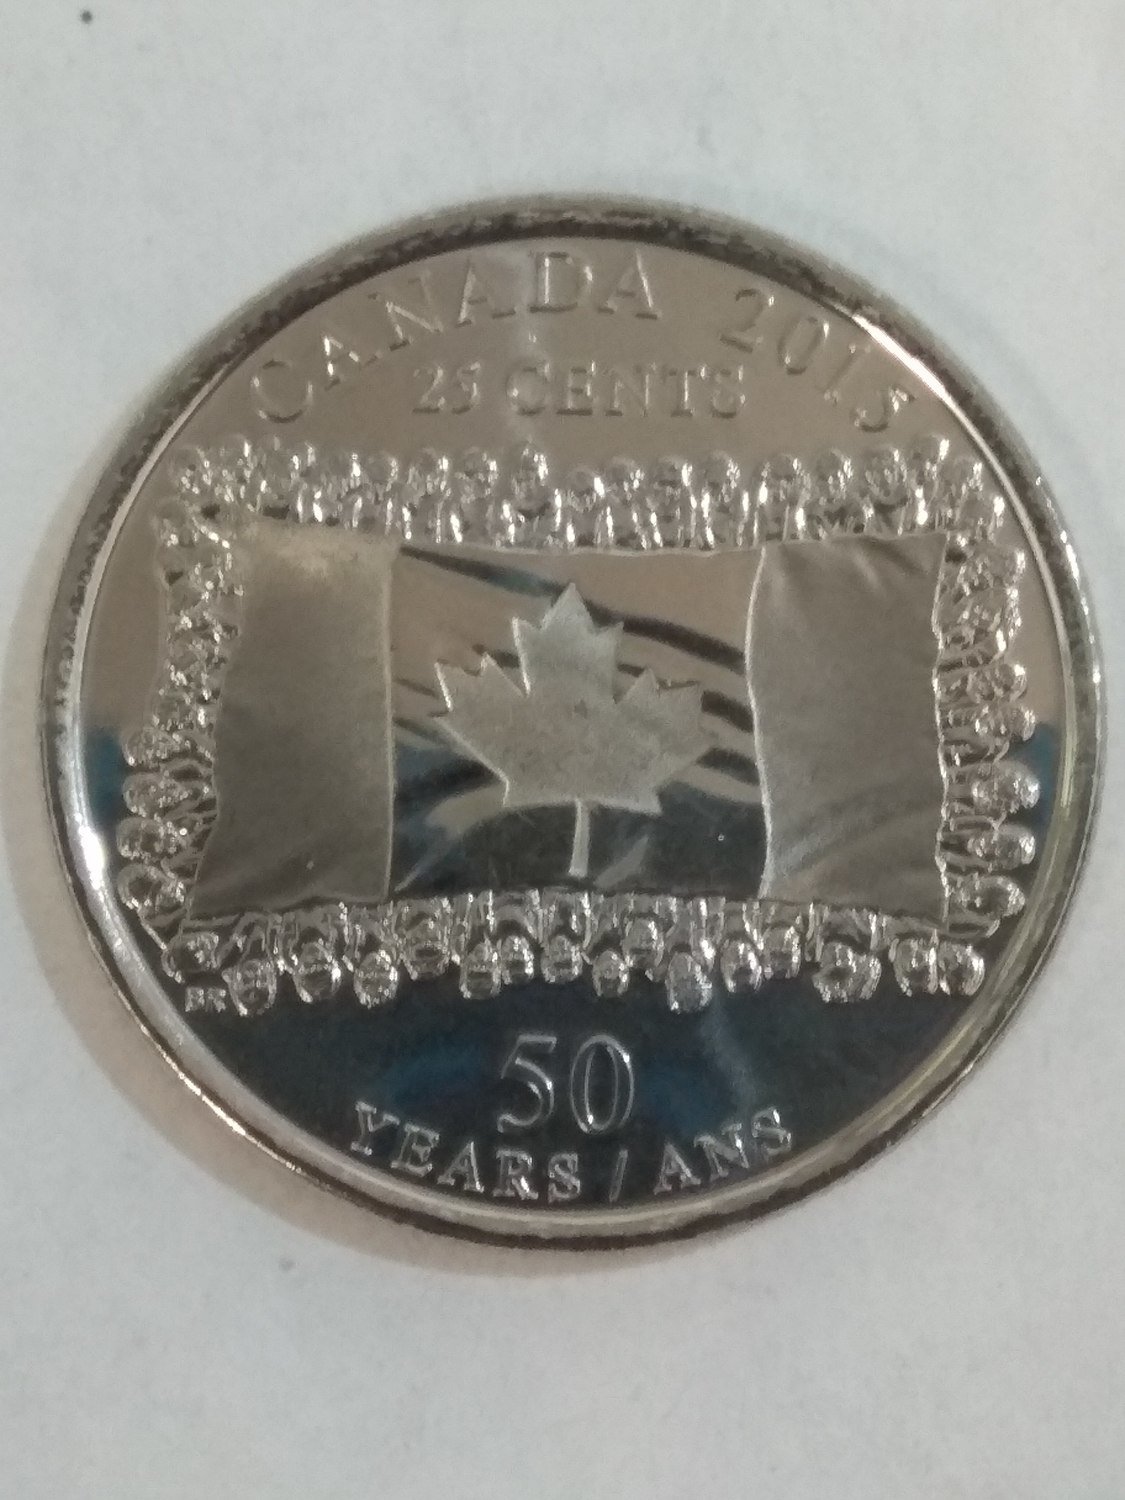 Канада. Елизавета II. 2015. 25 центов. 1965-2015. 50 лет флагу Канады. Fe-Ni 4.43 g. Proof-like